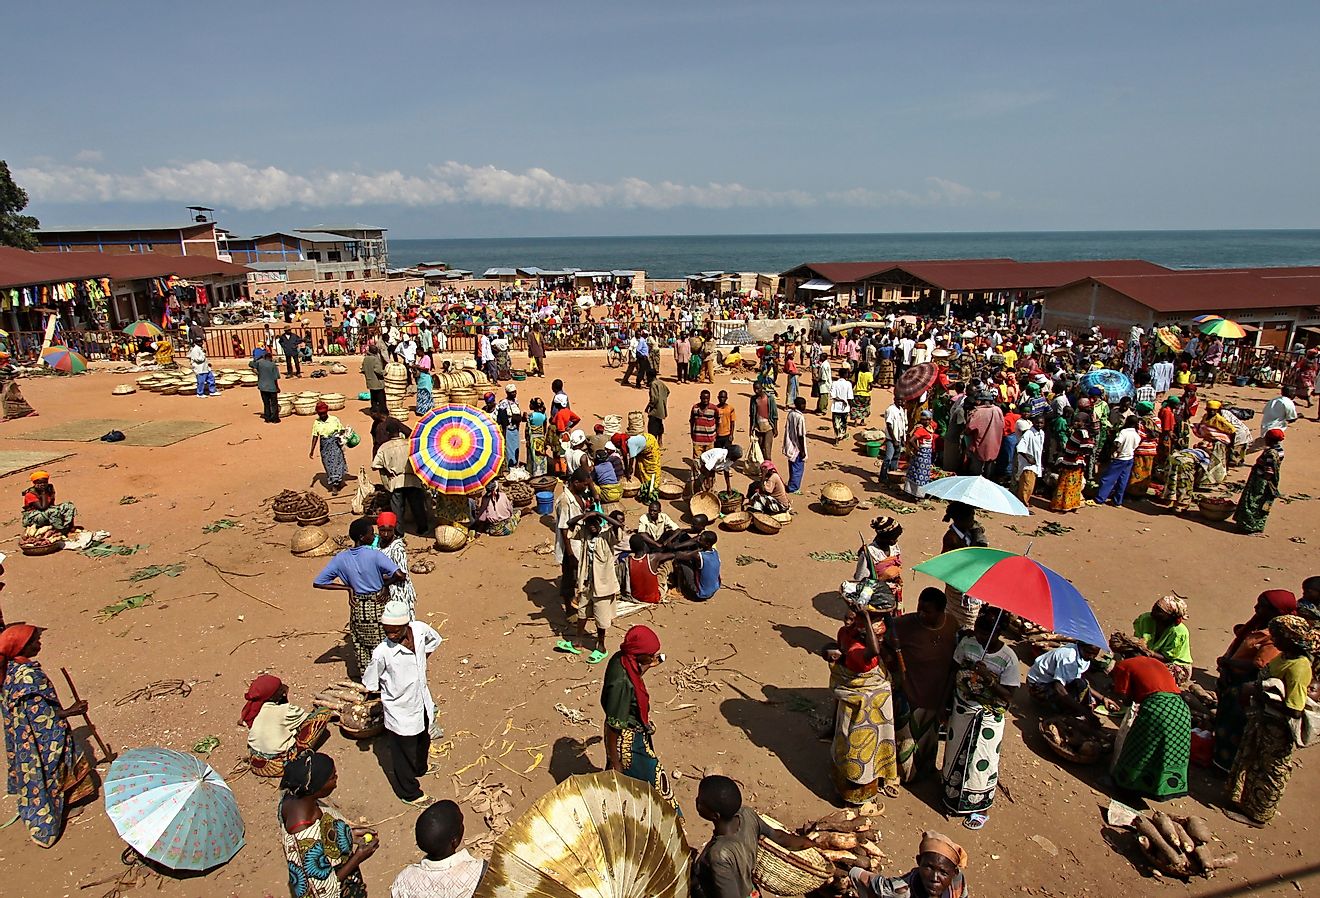 Burundian people at the market, Burundi. Image credit Rostasedlacek via Shutterstock